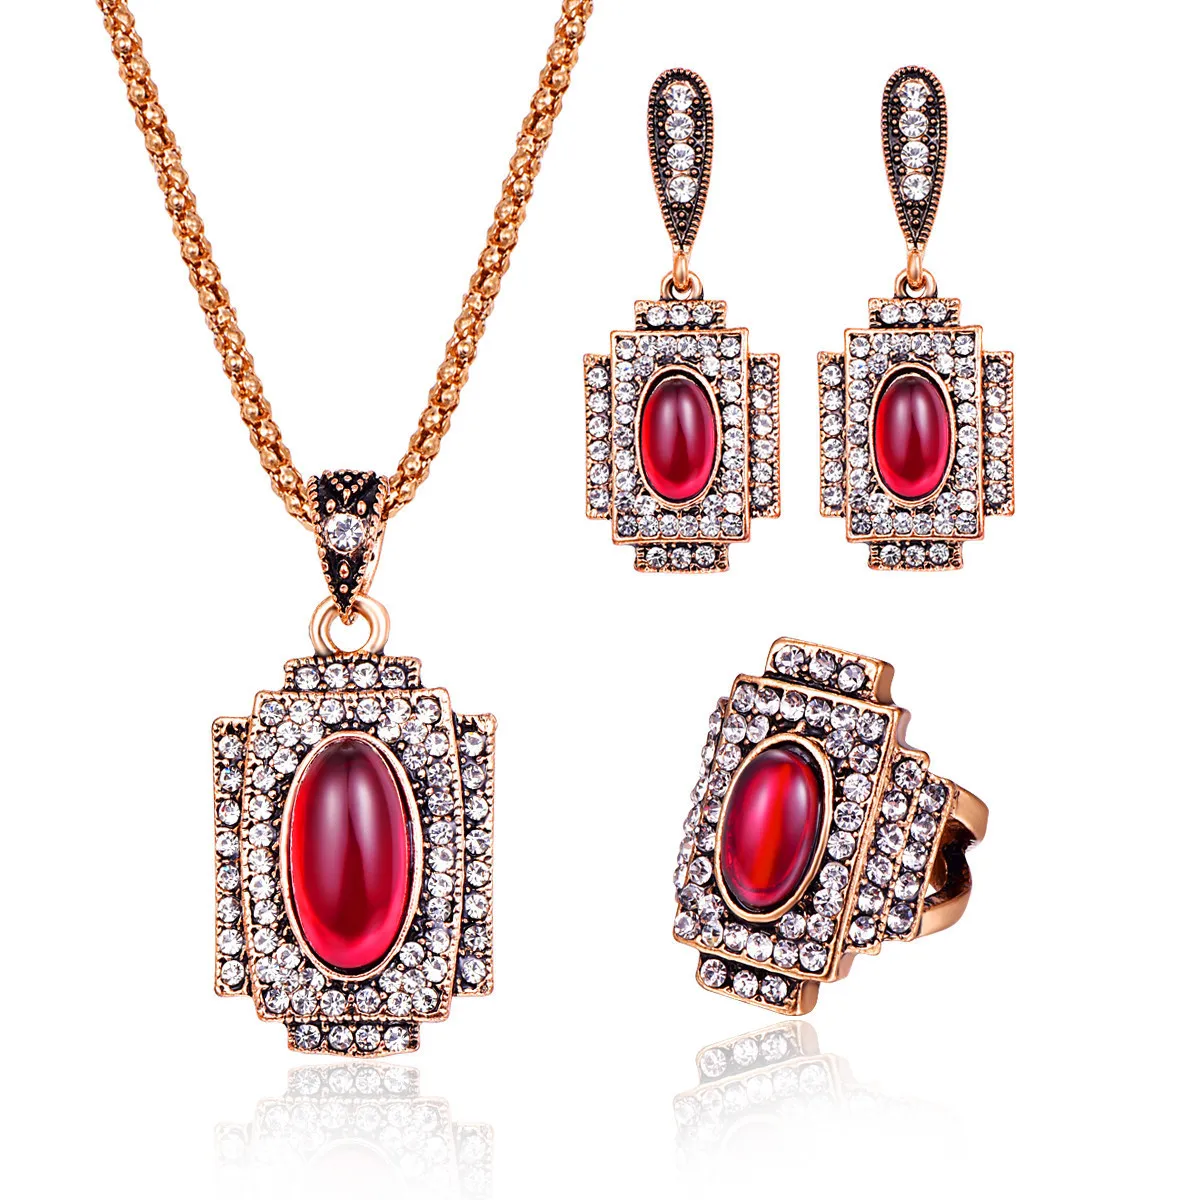 CASHOU35 Rojo de cristal de la moda de sistema de la joyería de circón de tres piezas anillo del collar del collar de los pendientes de la joyería conjunto 1